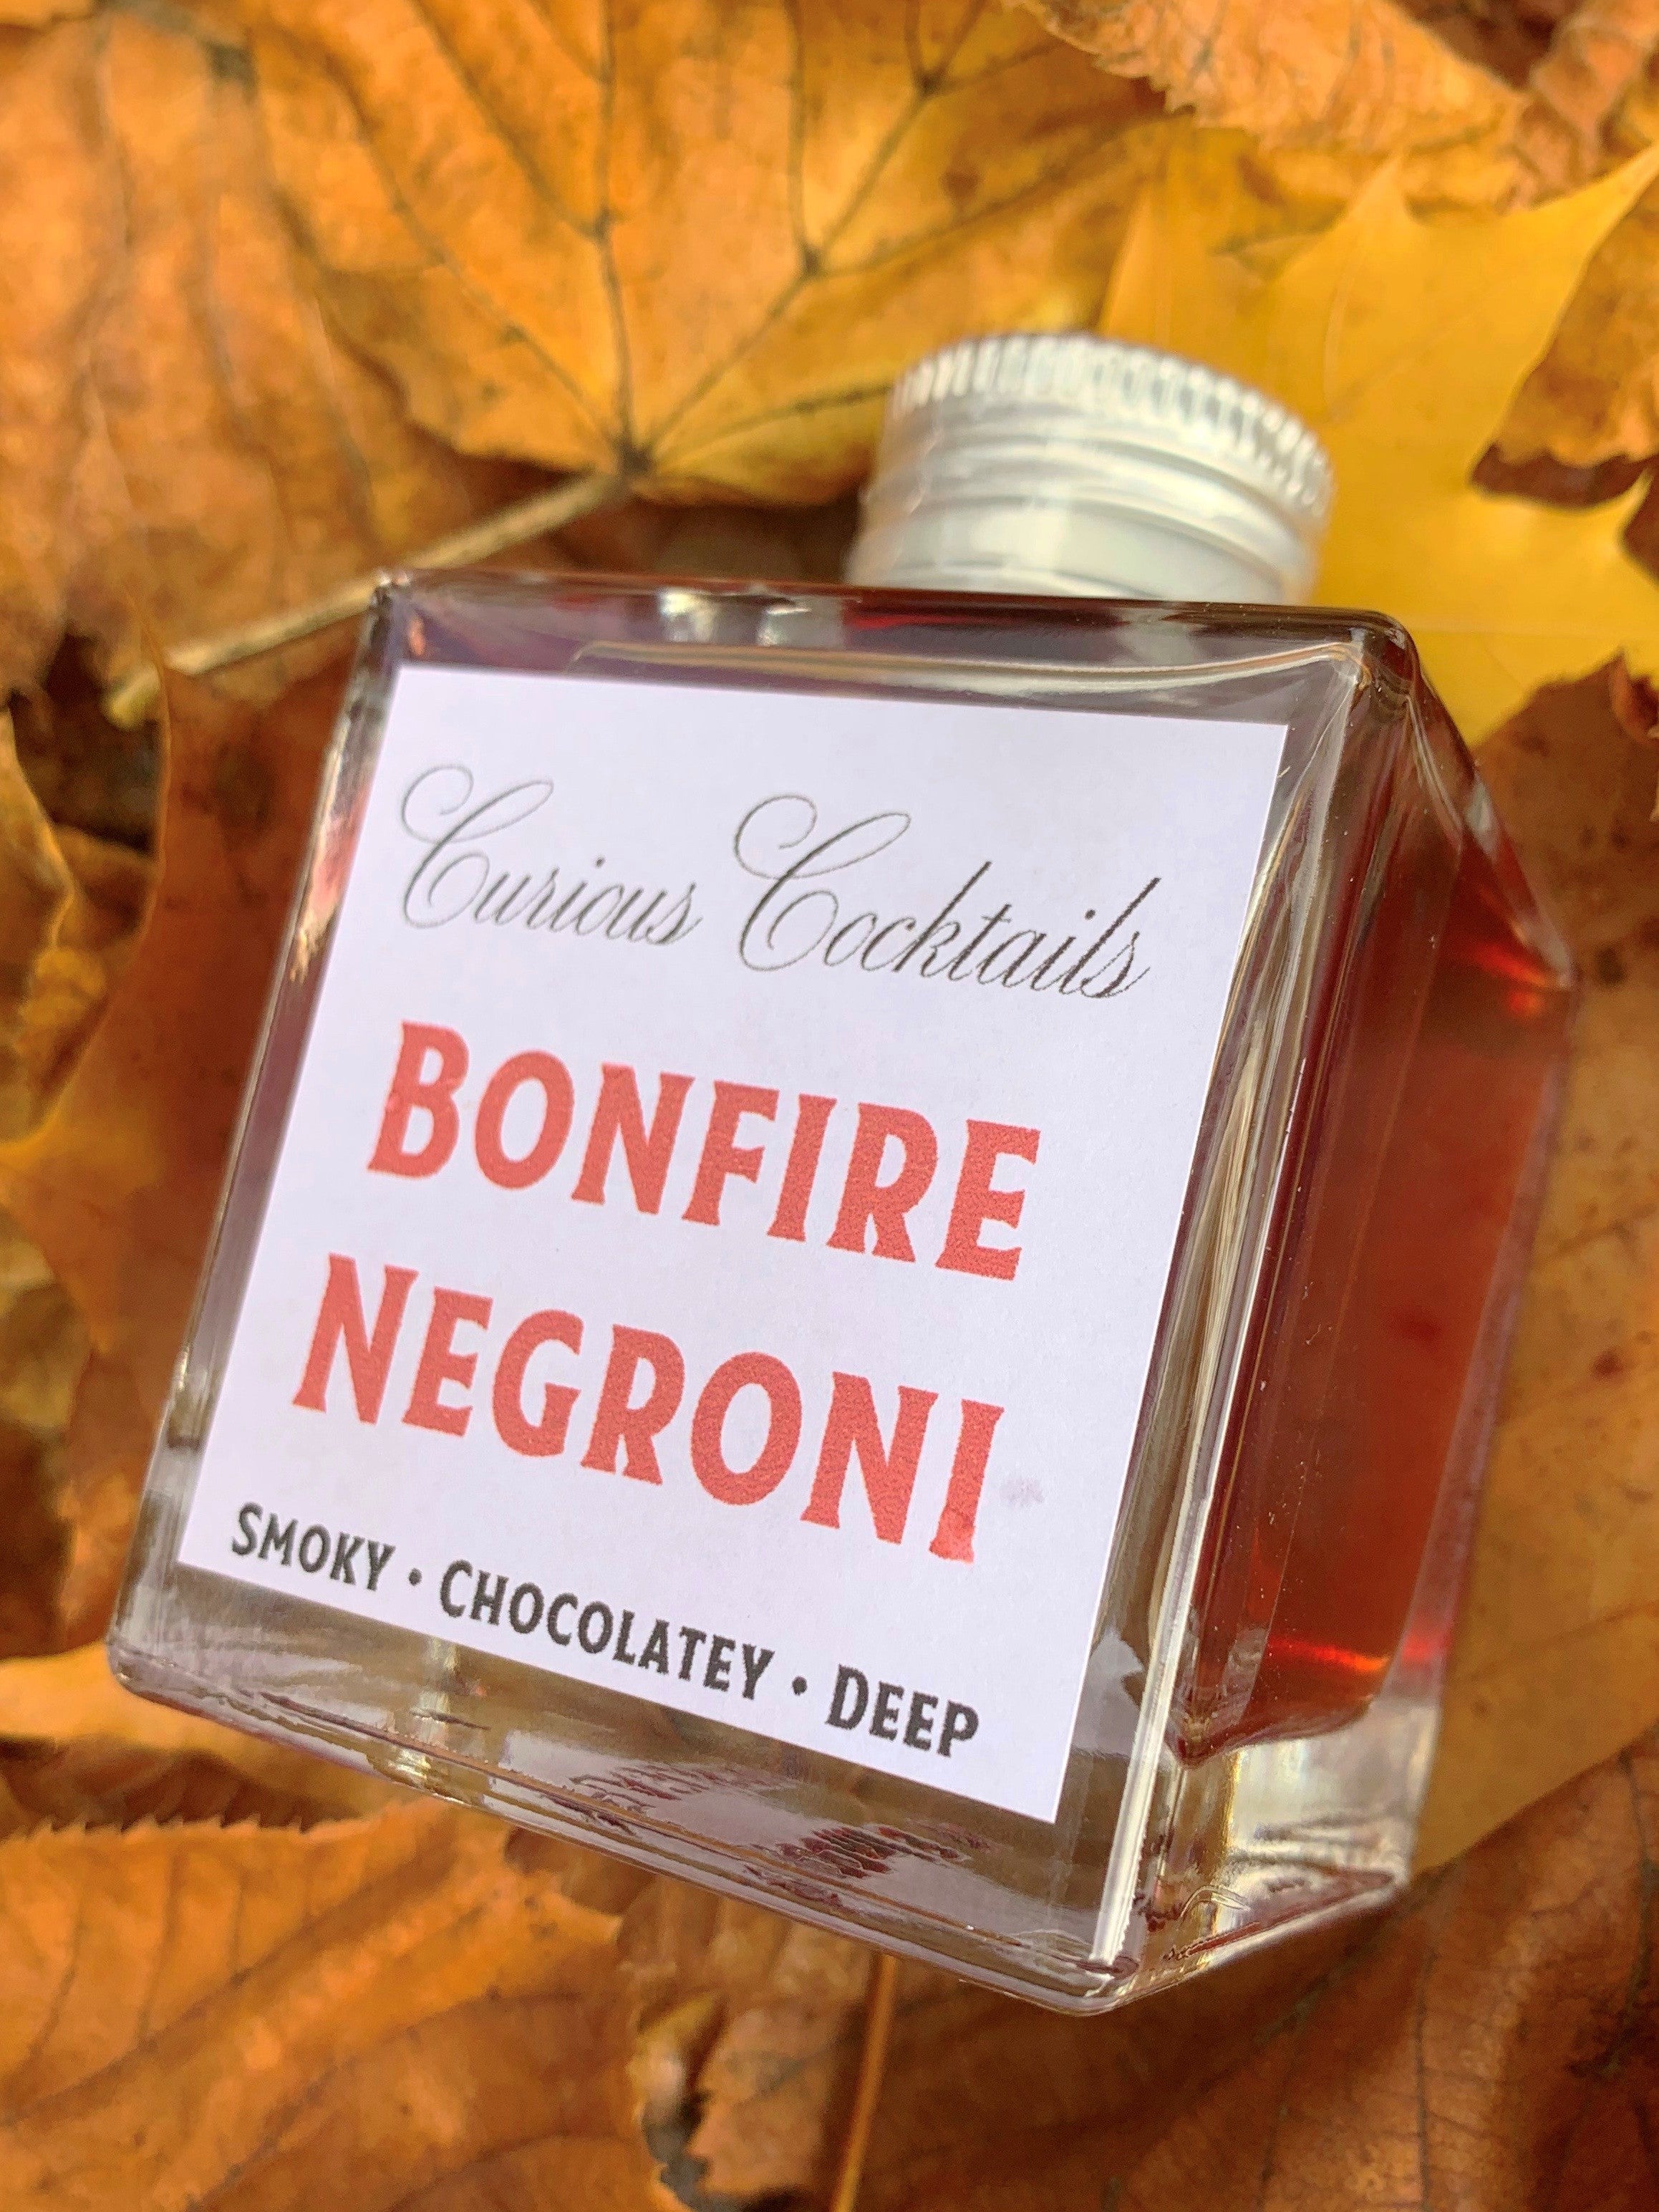 Curious Cocktails: Bonfire Negroni